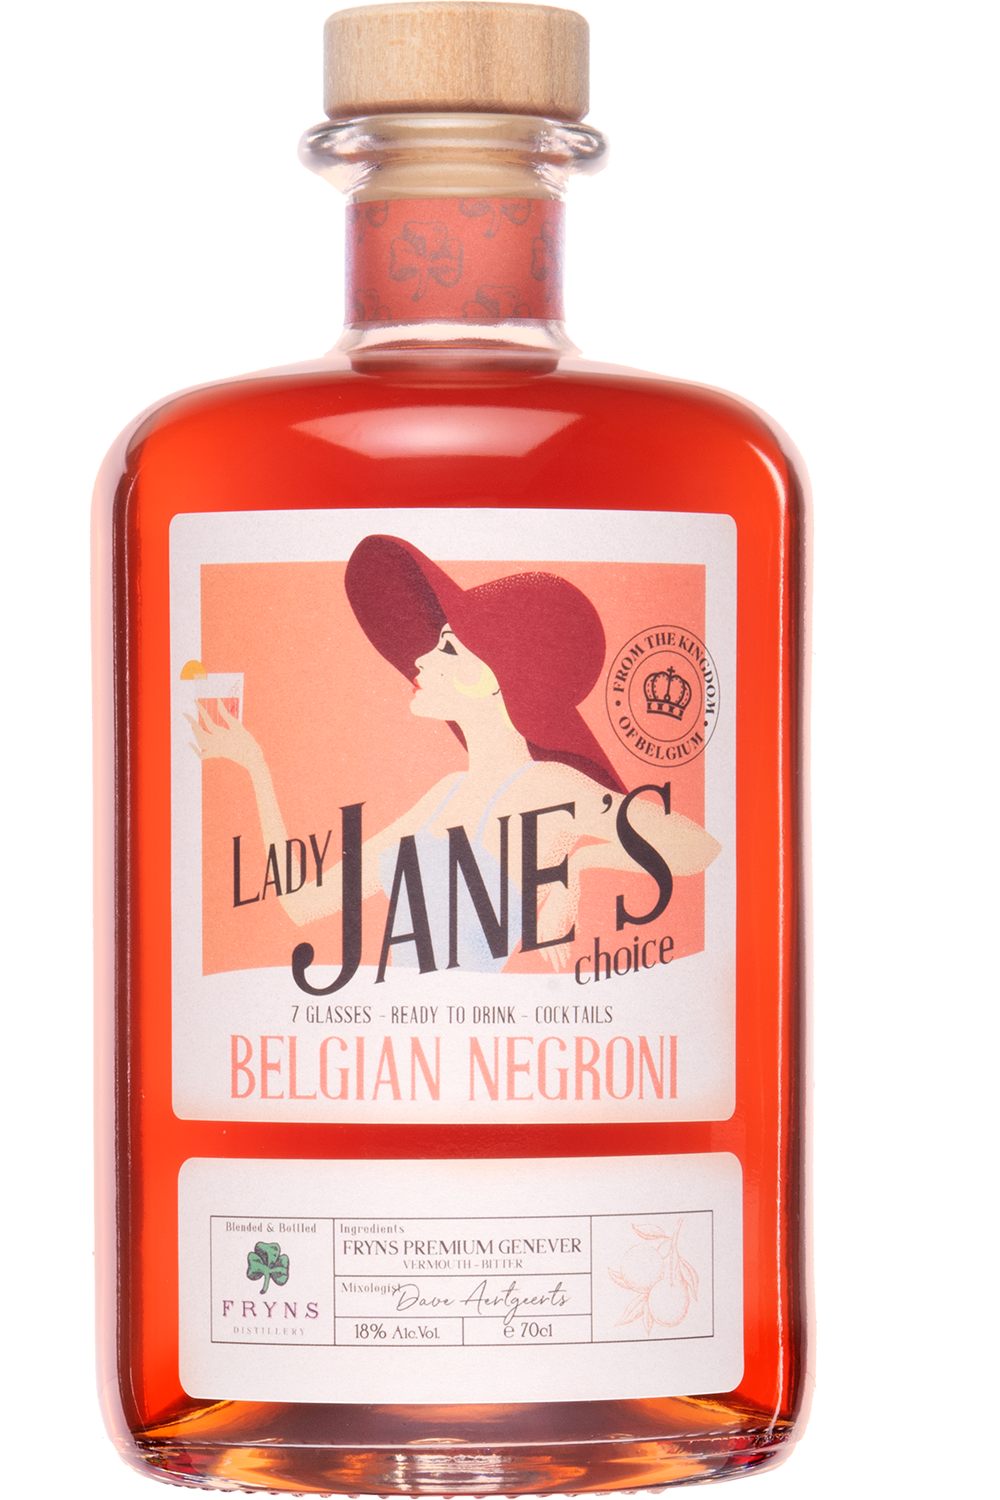 Lady Jane Belgian Negroni